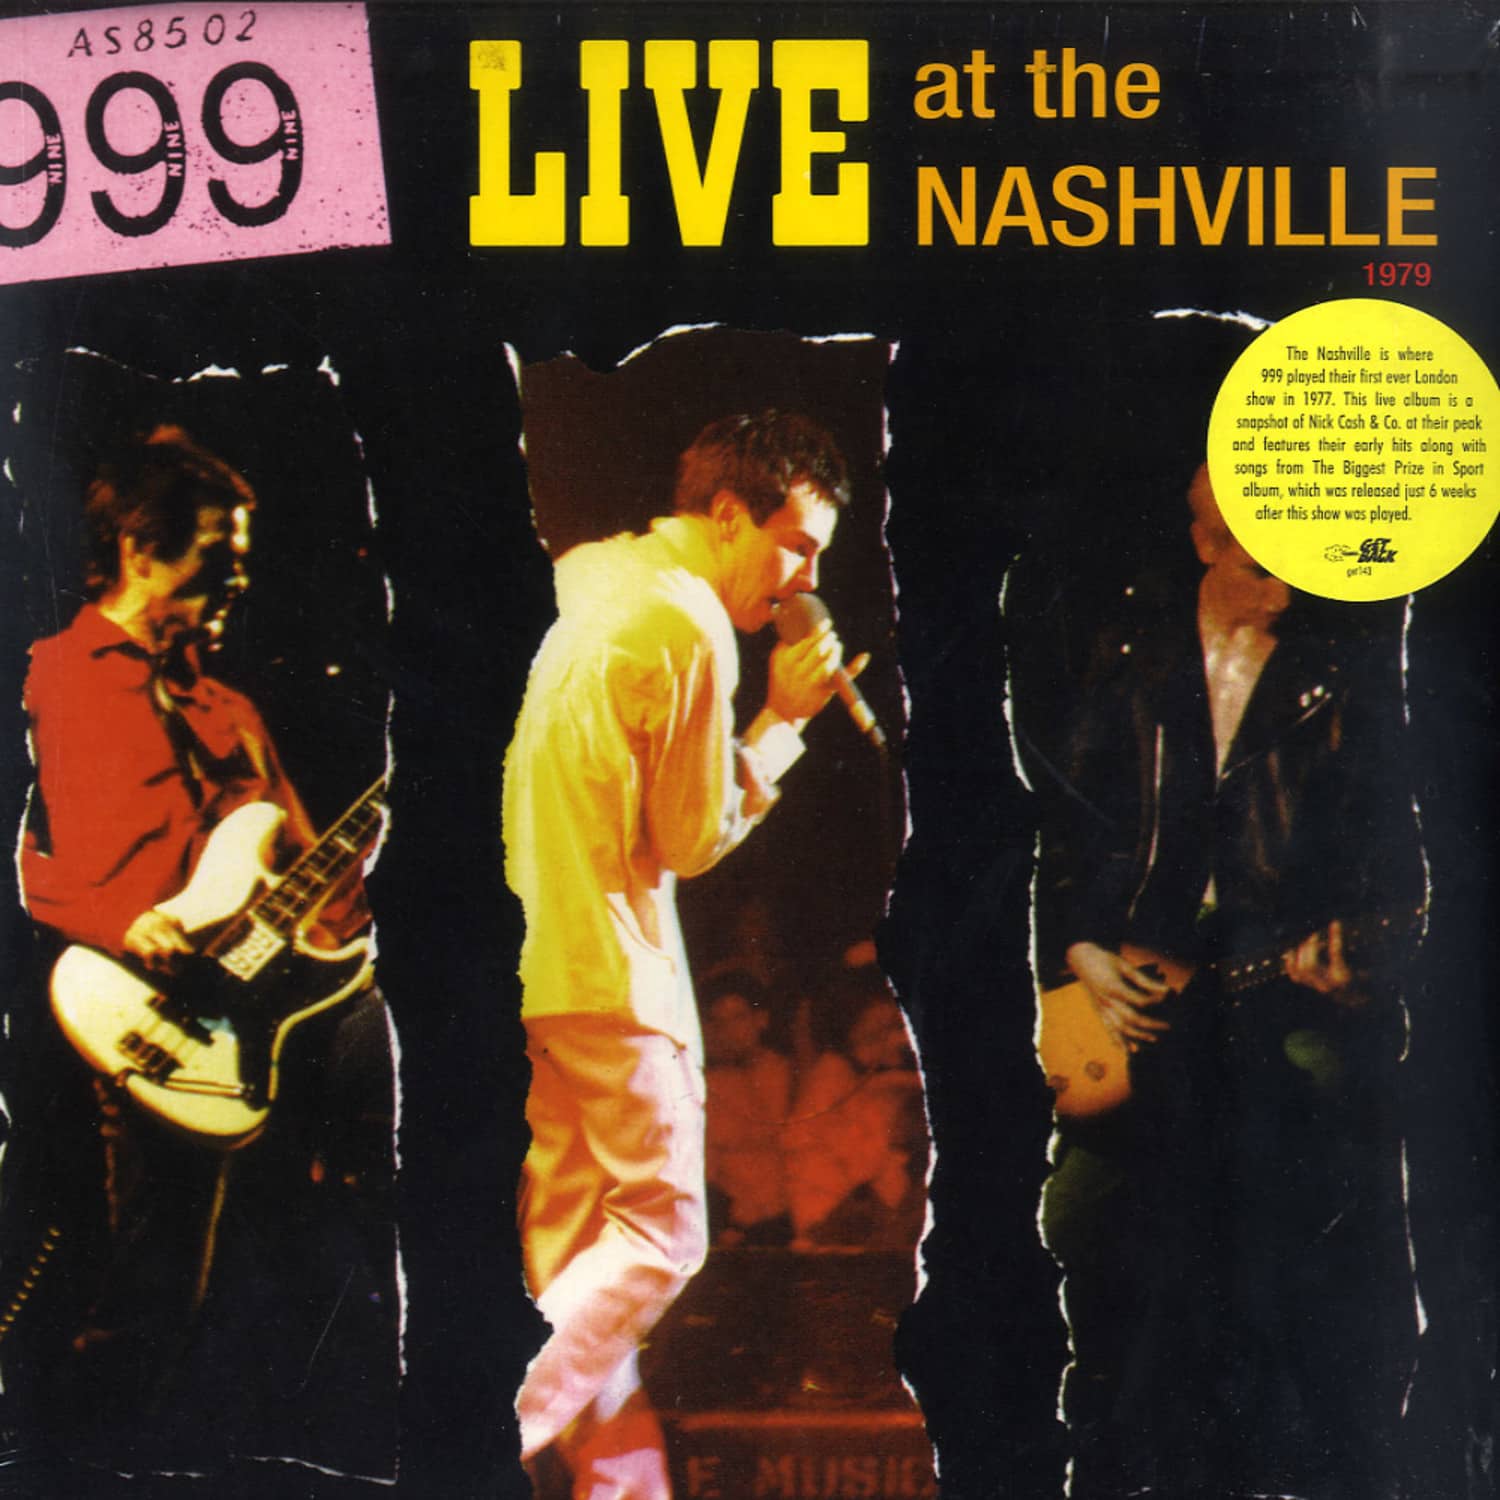 999 - LIVE AT THE NASHVILLE 1979 